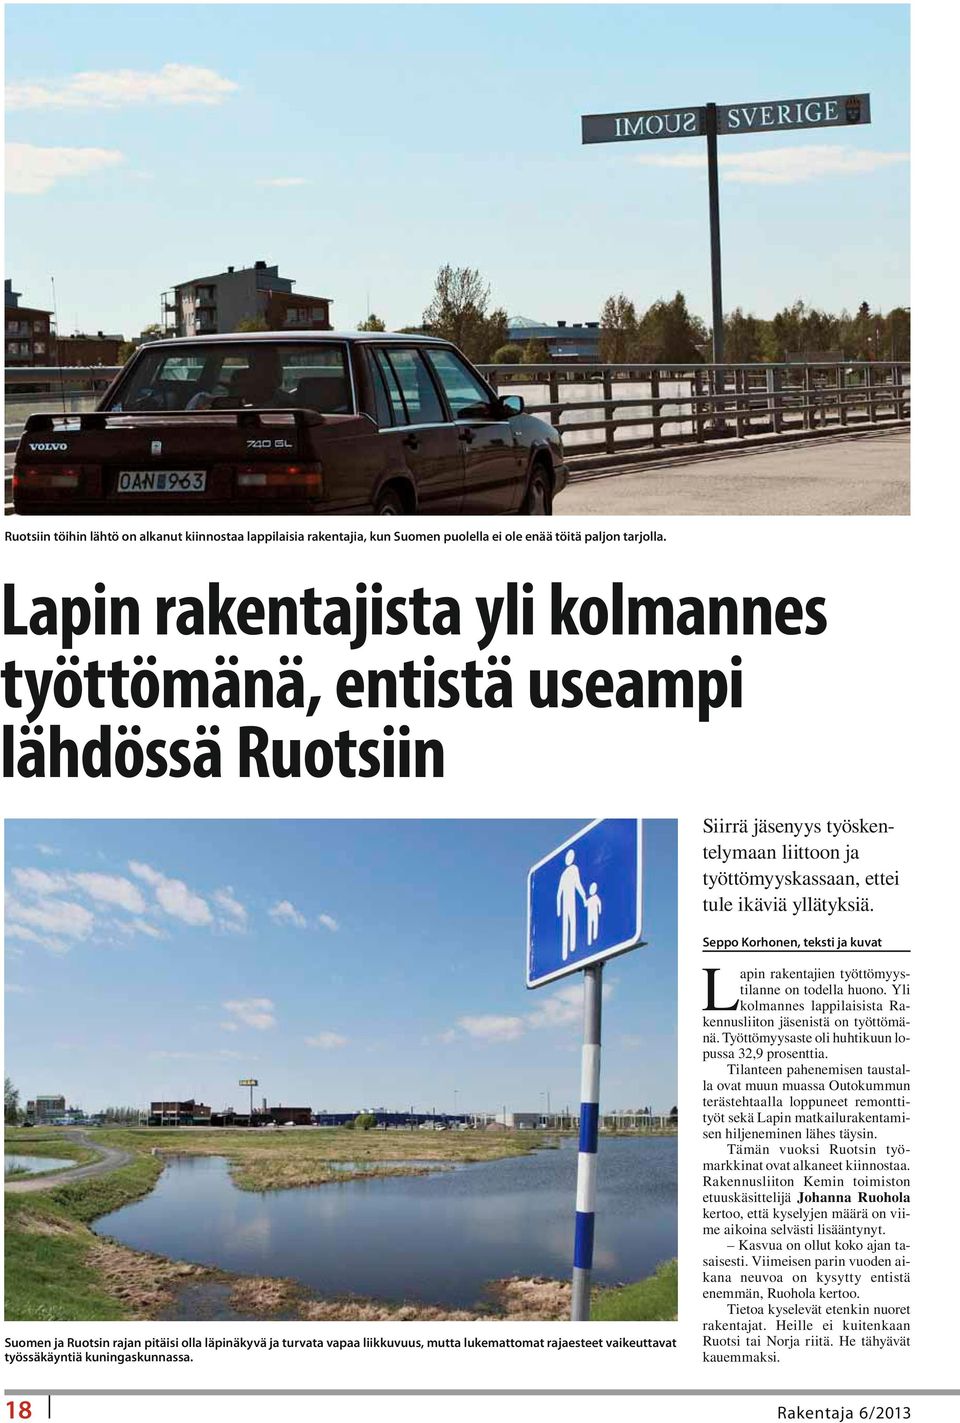 Seppo Korhonen, teksti ja kuvat L Suomen ja Ruotsin rajan pitäisi olla läpinäkyvä ja turvata vapaa liikkuvuus, mutta lukemattomat rajaesteet vaikeuttavat työssäkäyntiä kuningaskunnassa.